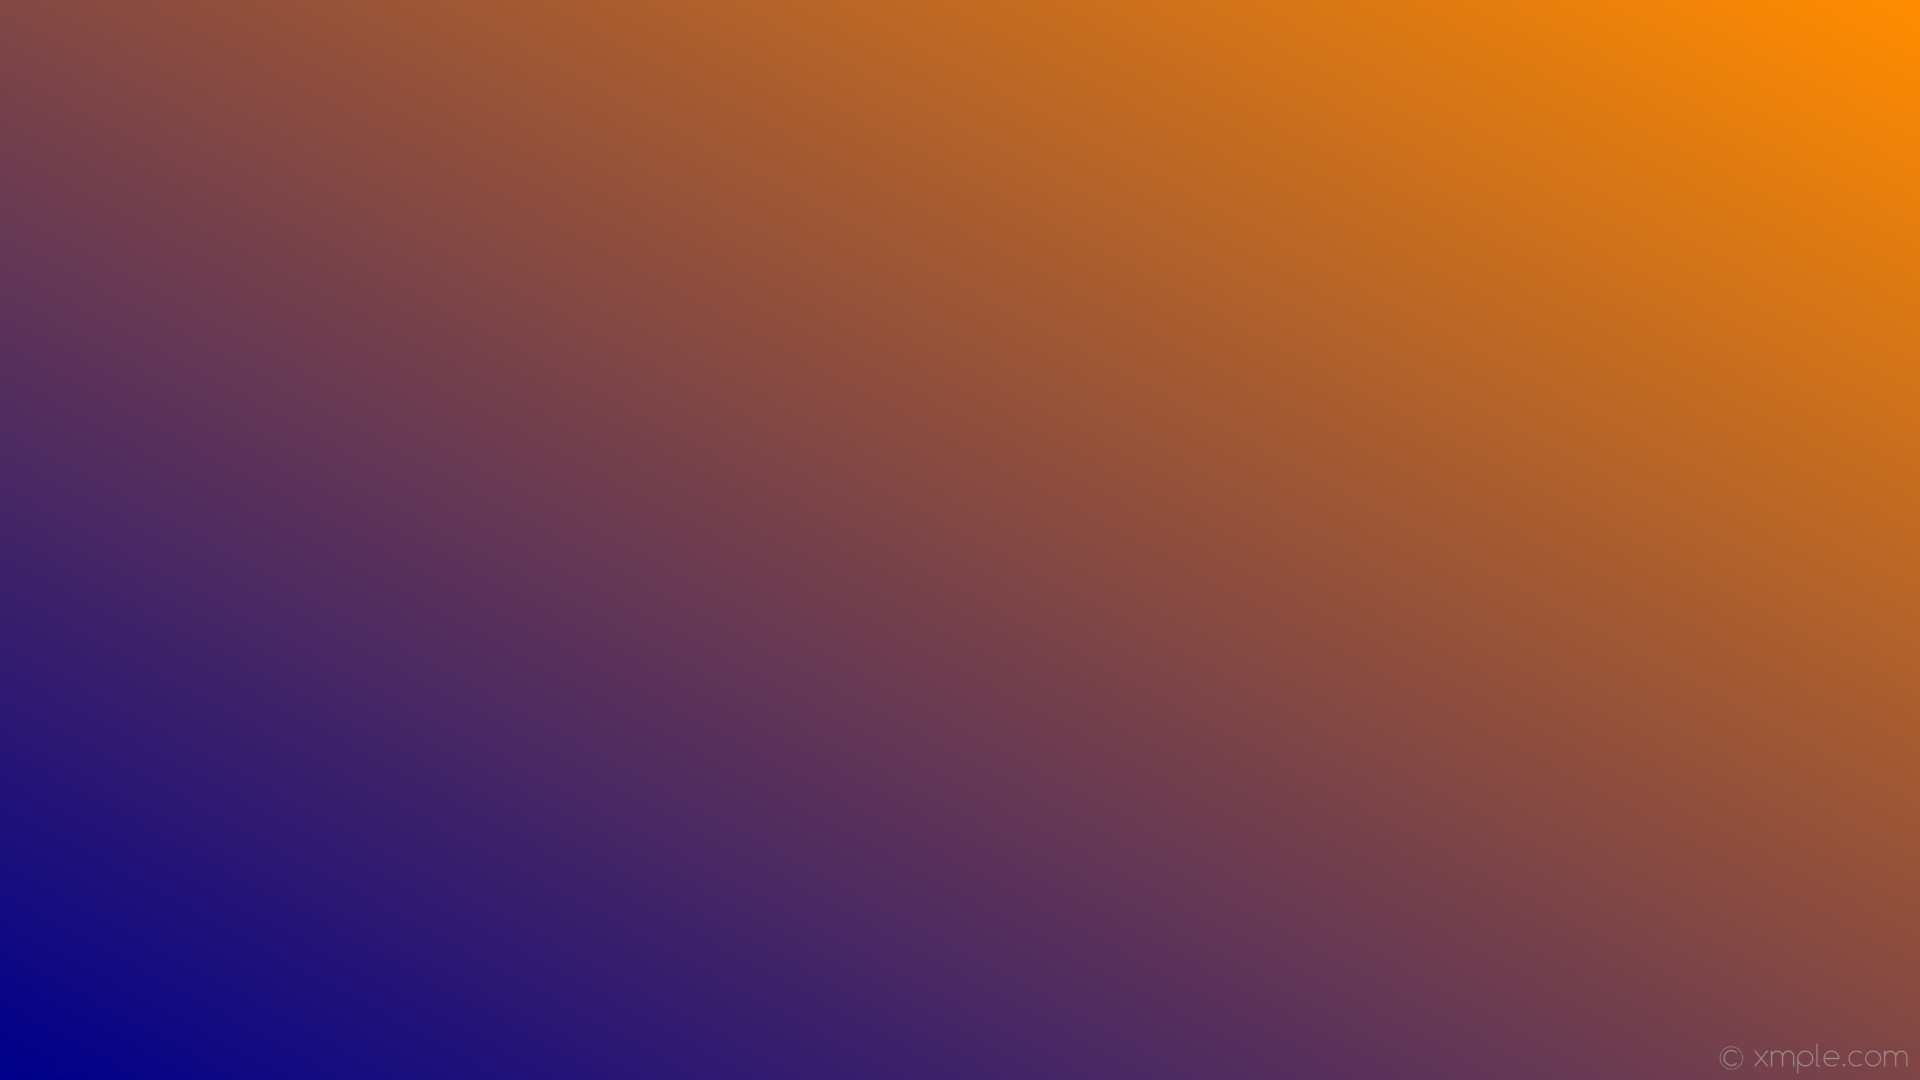 1920x1080 wallpaper linear gradient orange blue dark orange dark blue #ff8c00 #00008b  30Â°